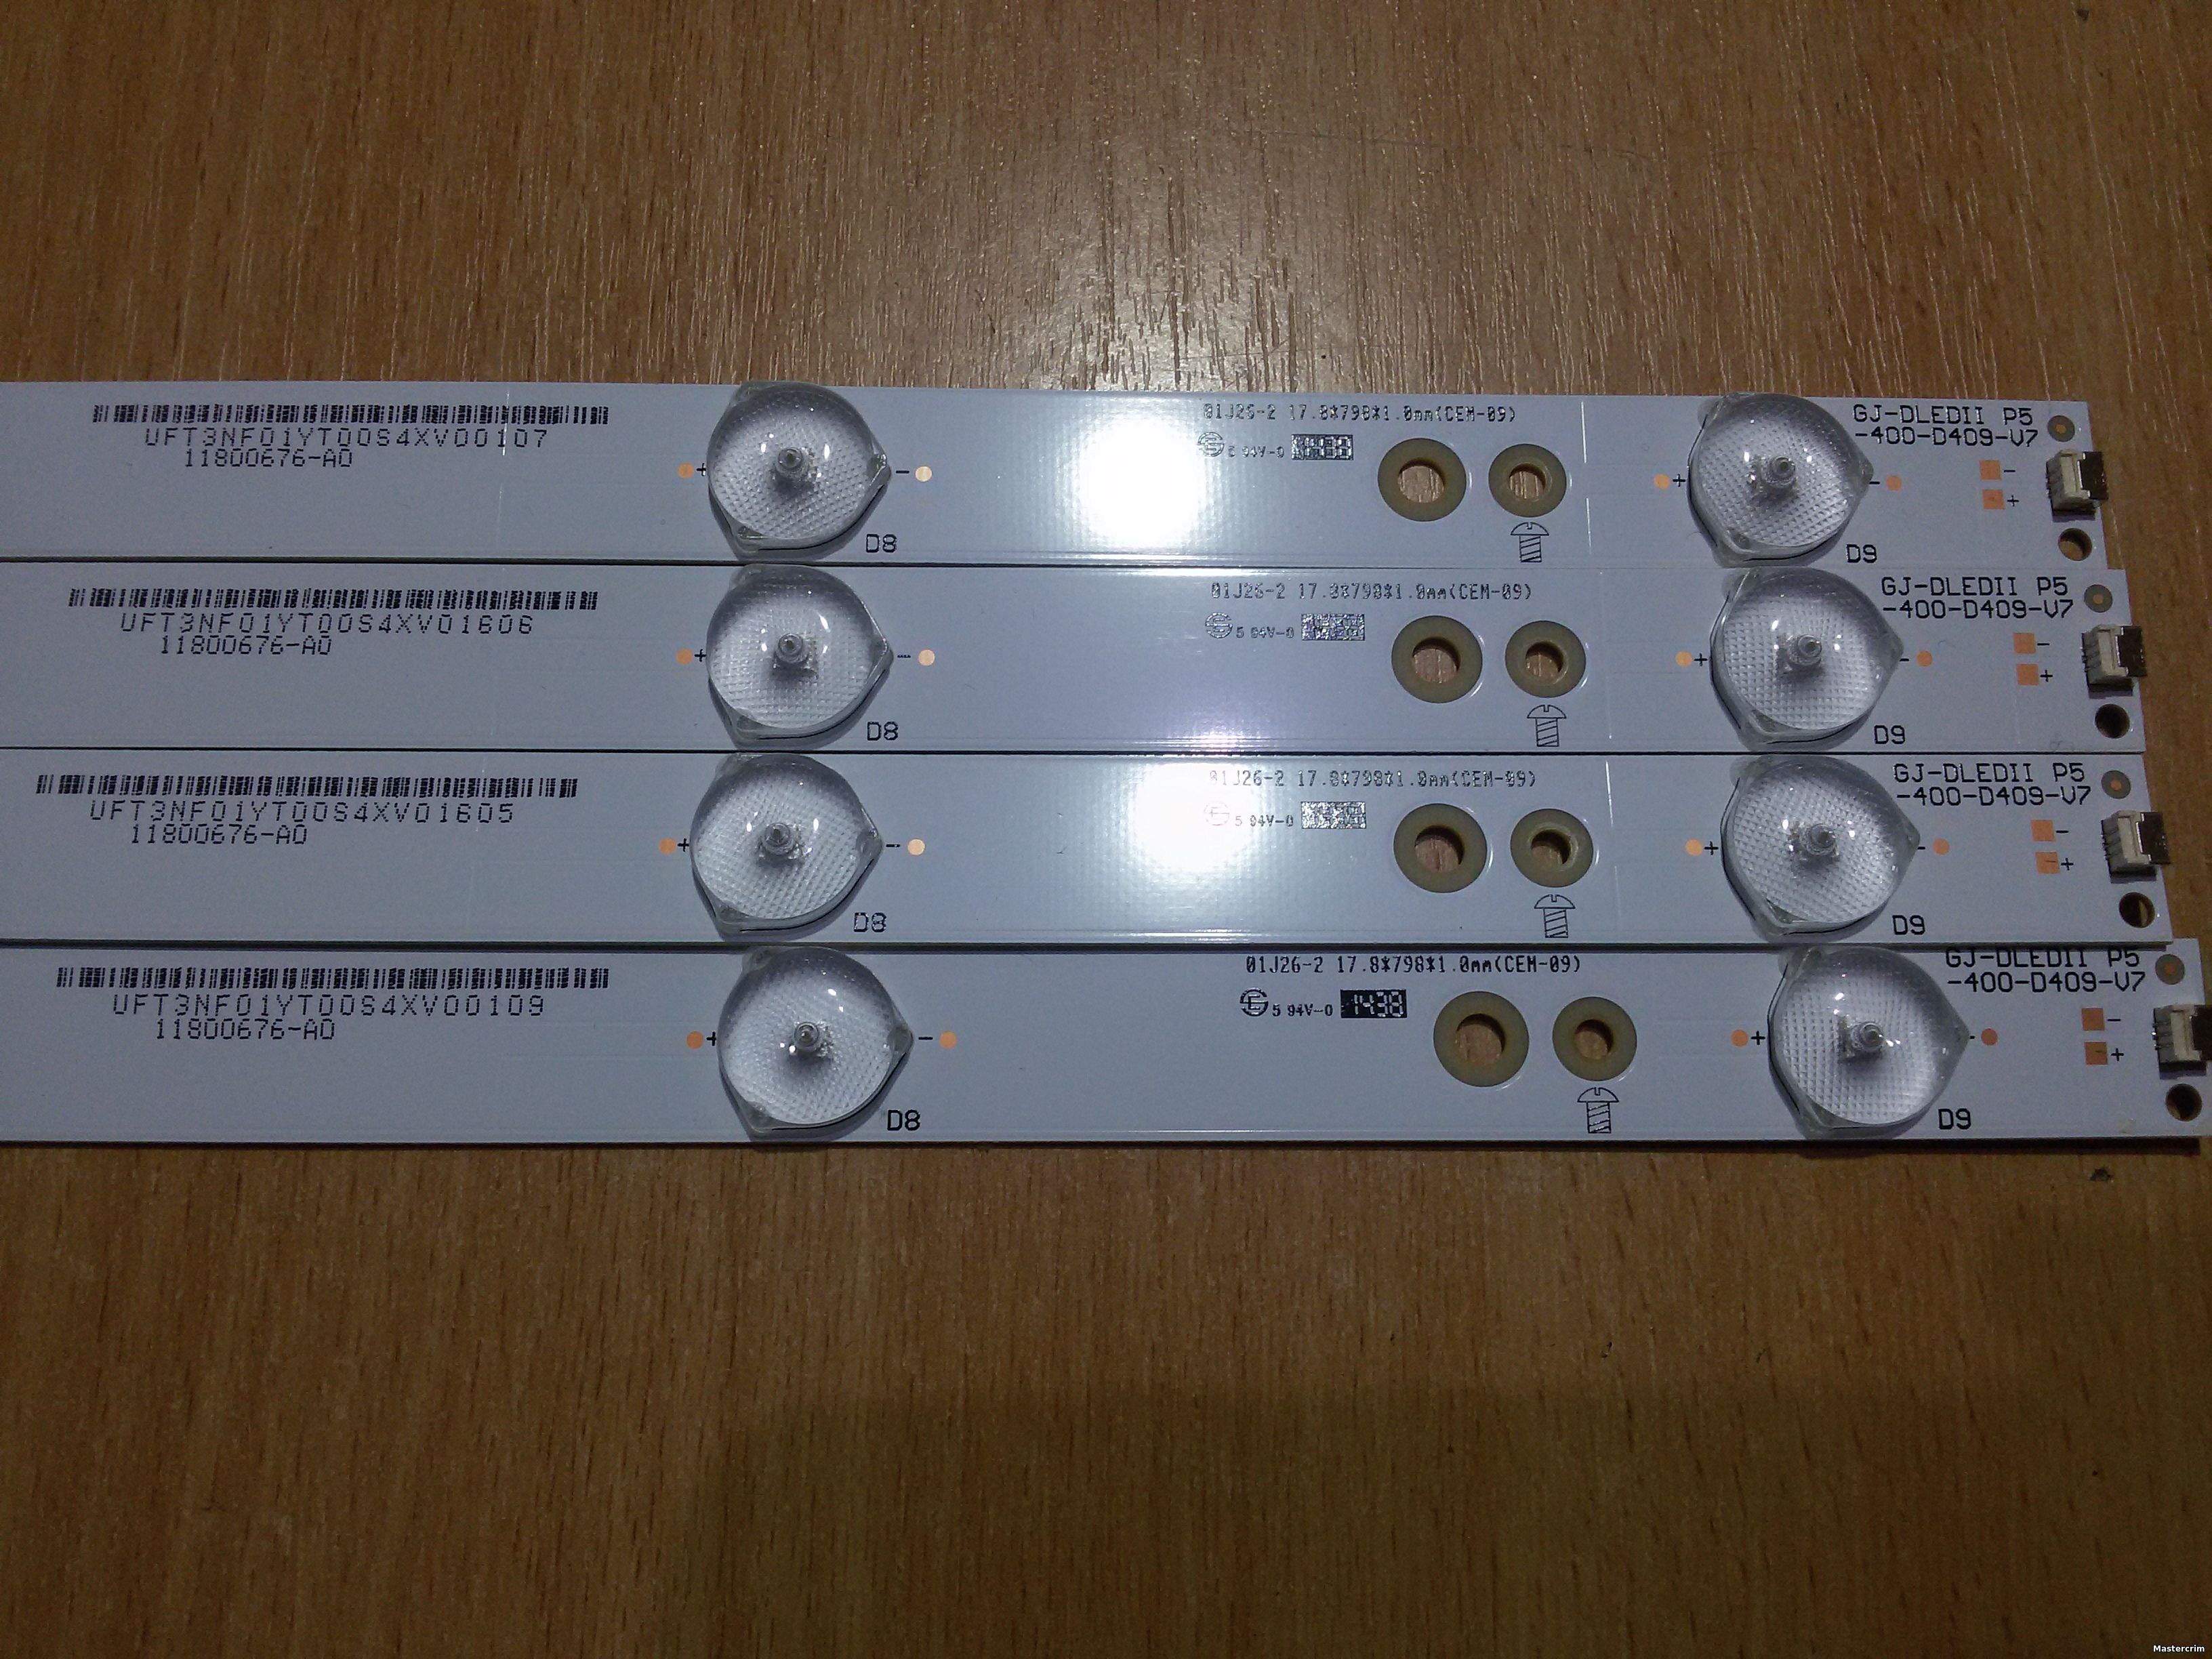 Комплект LED подсветки телевизора Philips 40PFT4509/60, GJ-DLEDII P5-400-D409-V7, 11800676-A0 б/у